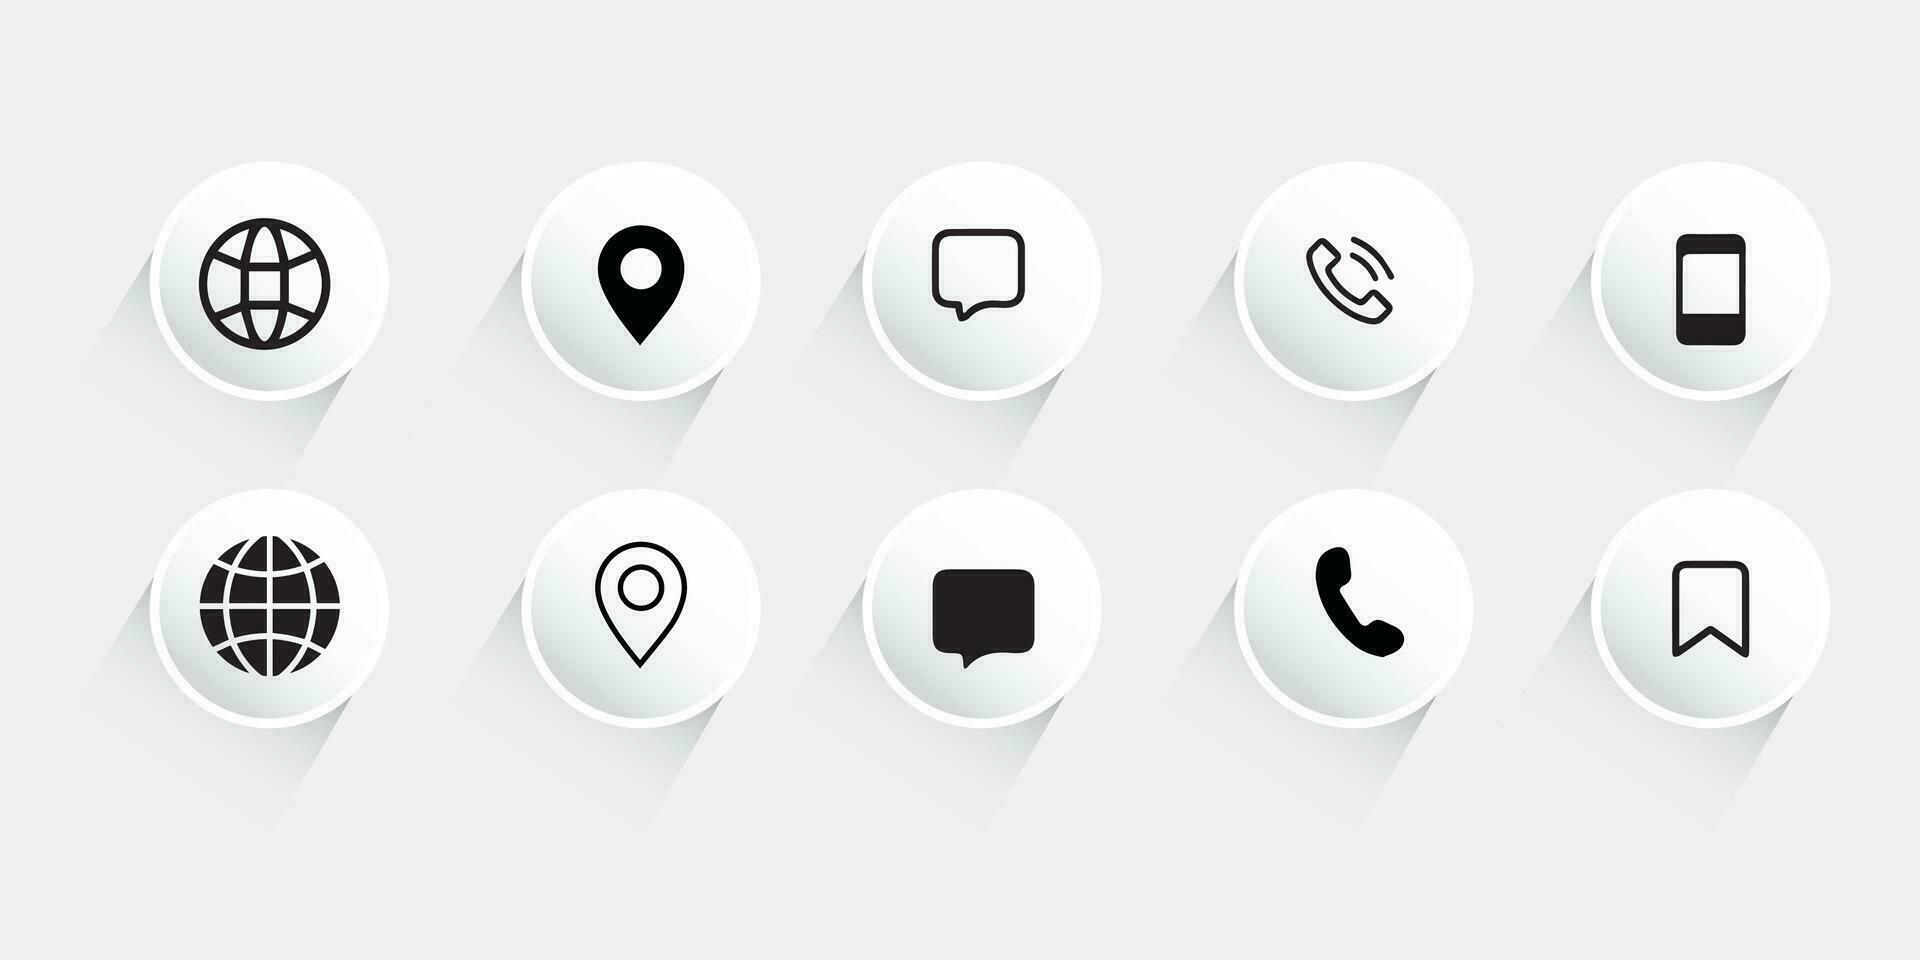 Kontakt oss ikon ange.kontakt och kommunikation icons.set av kommunikation ikon. vektor